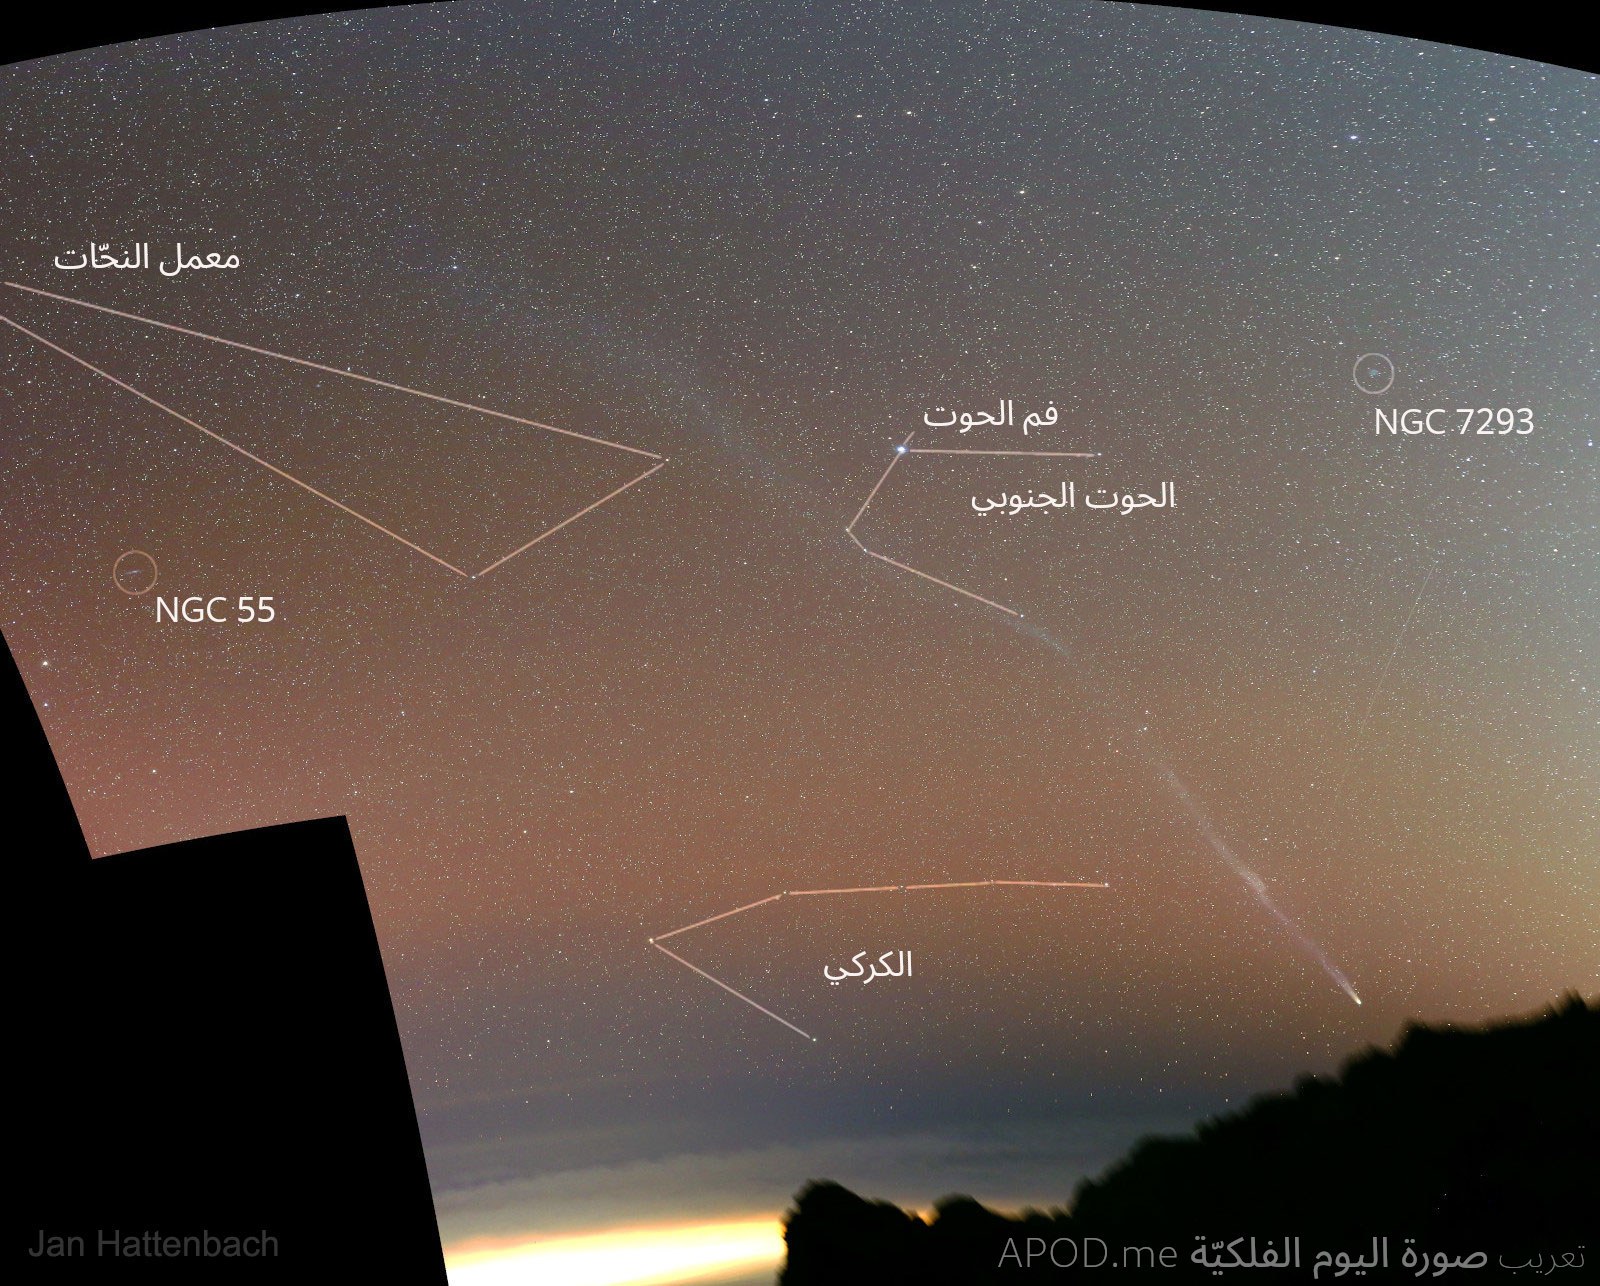 الصورة ووضّحت عليها كوكبة الحوت الجنوبي مع نجم فم الحوت وكوكبة معمل النحّات وكوكبة الكركي وكل من إن‌جي‌سي 7293 و55